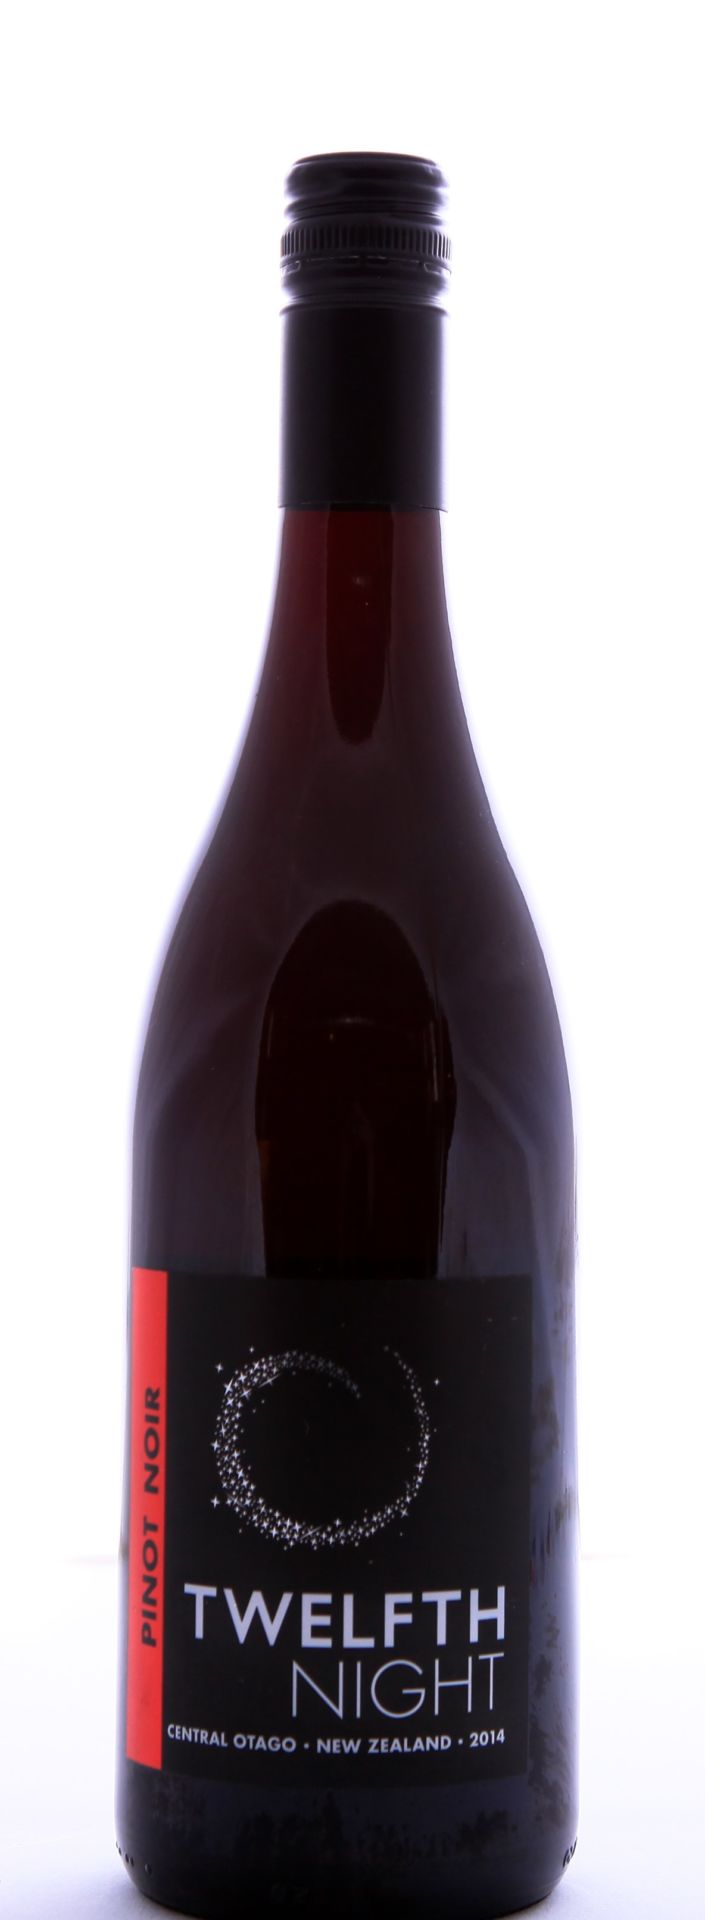 2014 Pinot Noir New Zealand